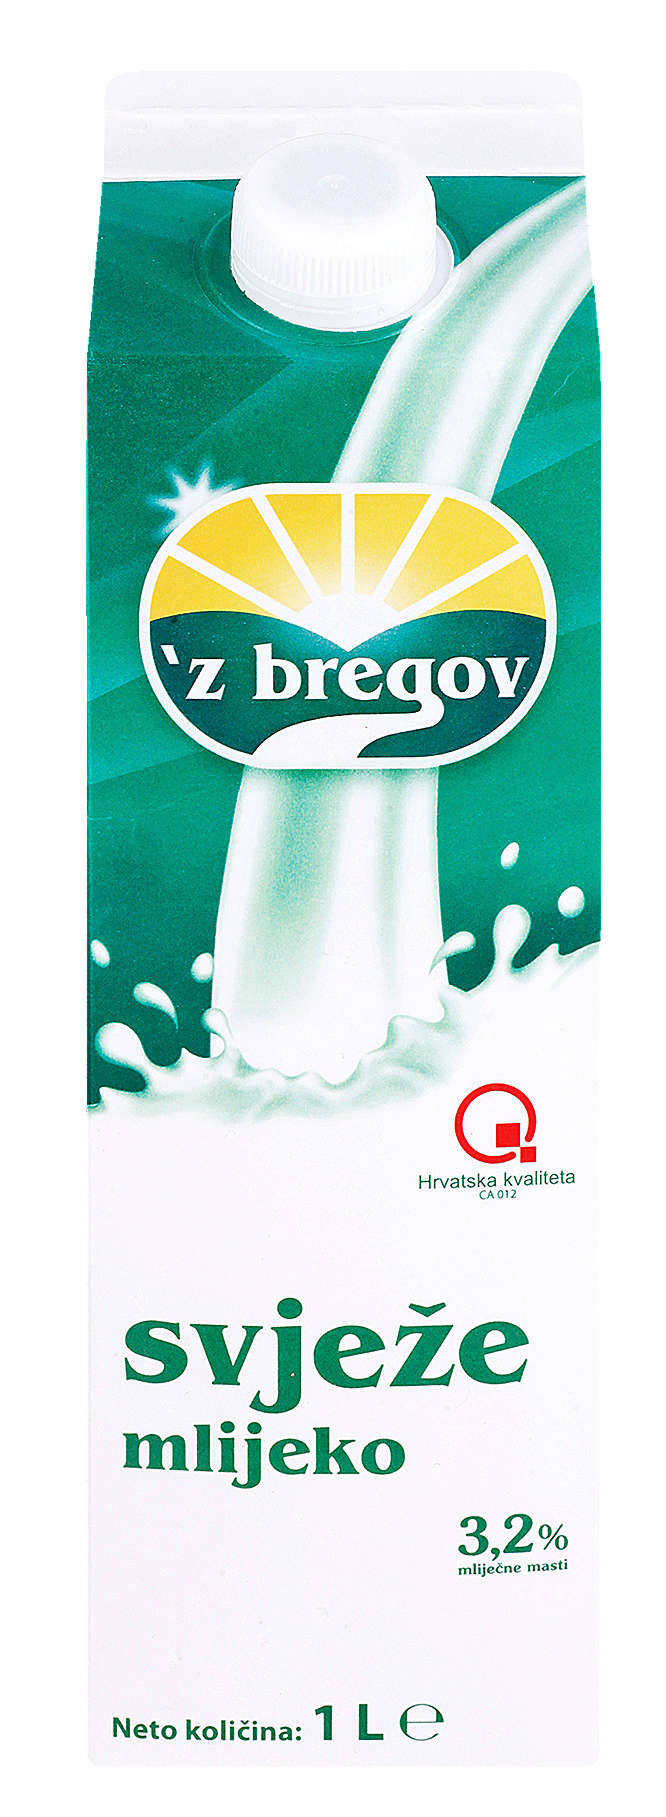 Fotografija ponude `Z bregov Svježe mlijeko, 3,2% m.m.